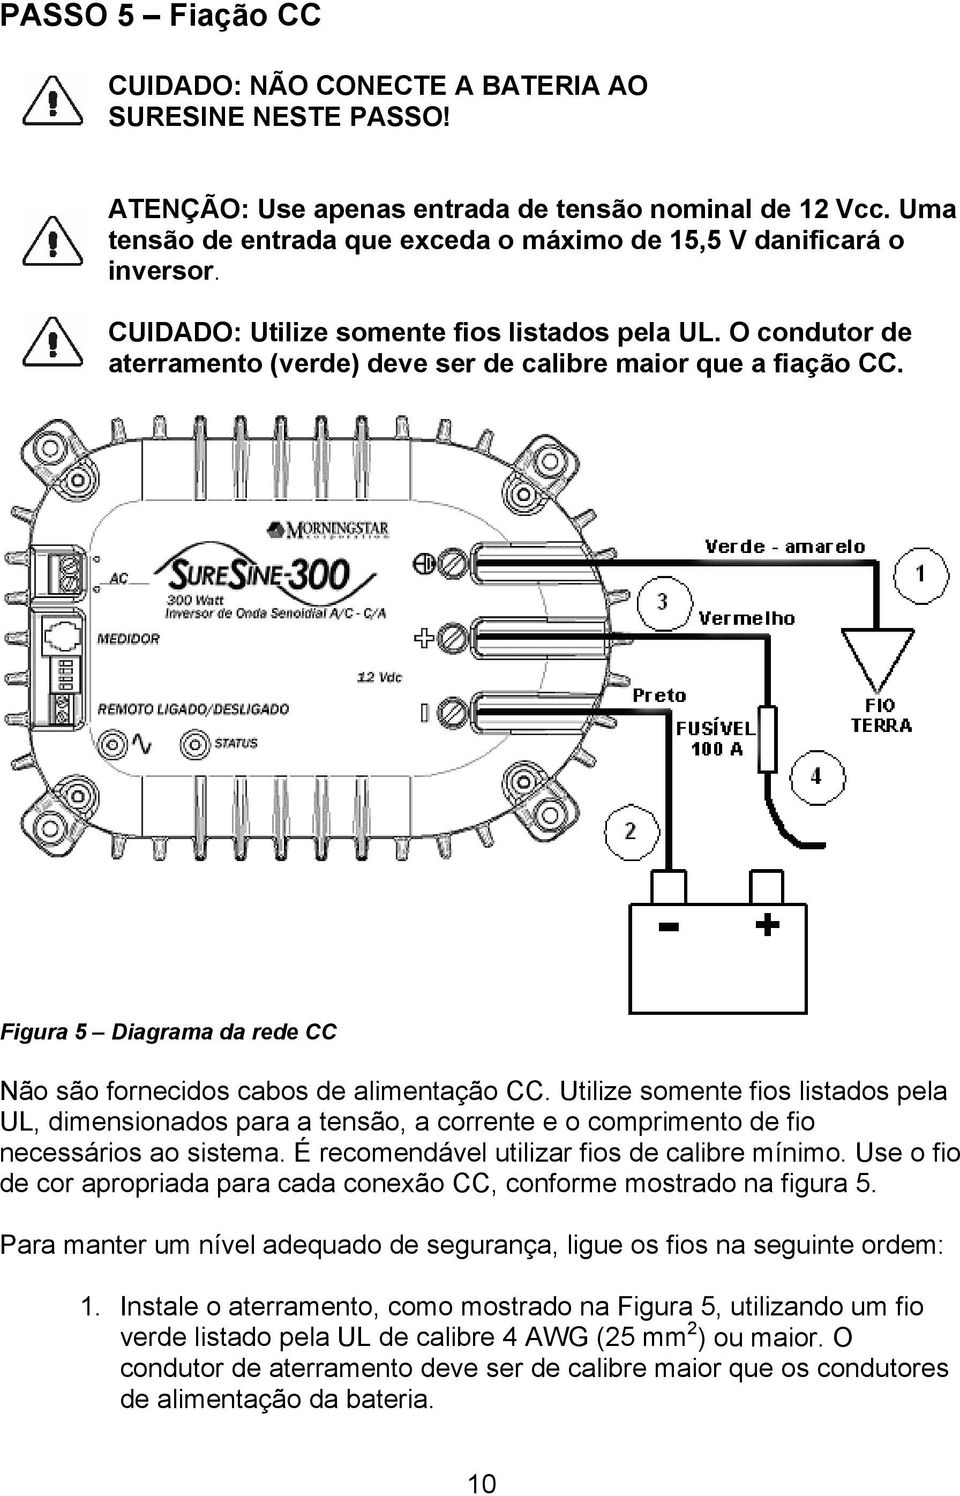 Figura 5 Diagrama da rede CC Não são fornecidos cabos de alimentação CC. Utilize somente fios listados pela UL, dimensionados para a tensão, a corrente e o comprimento de fio necessários ao sistema.